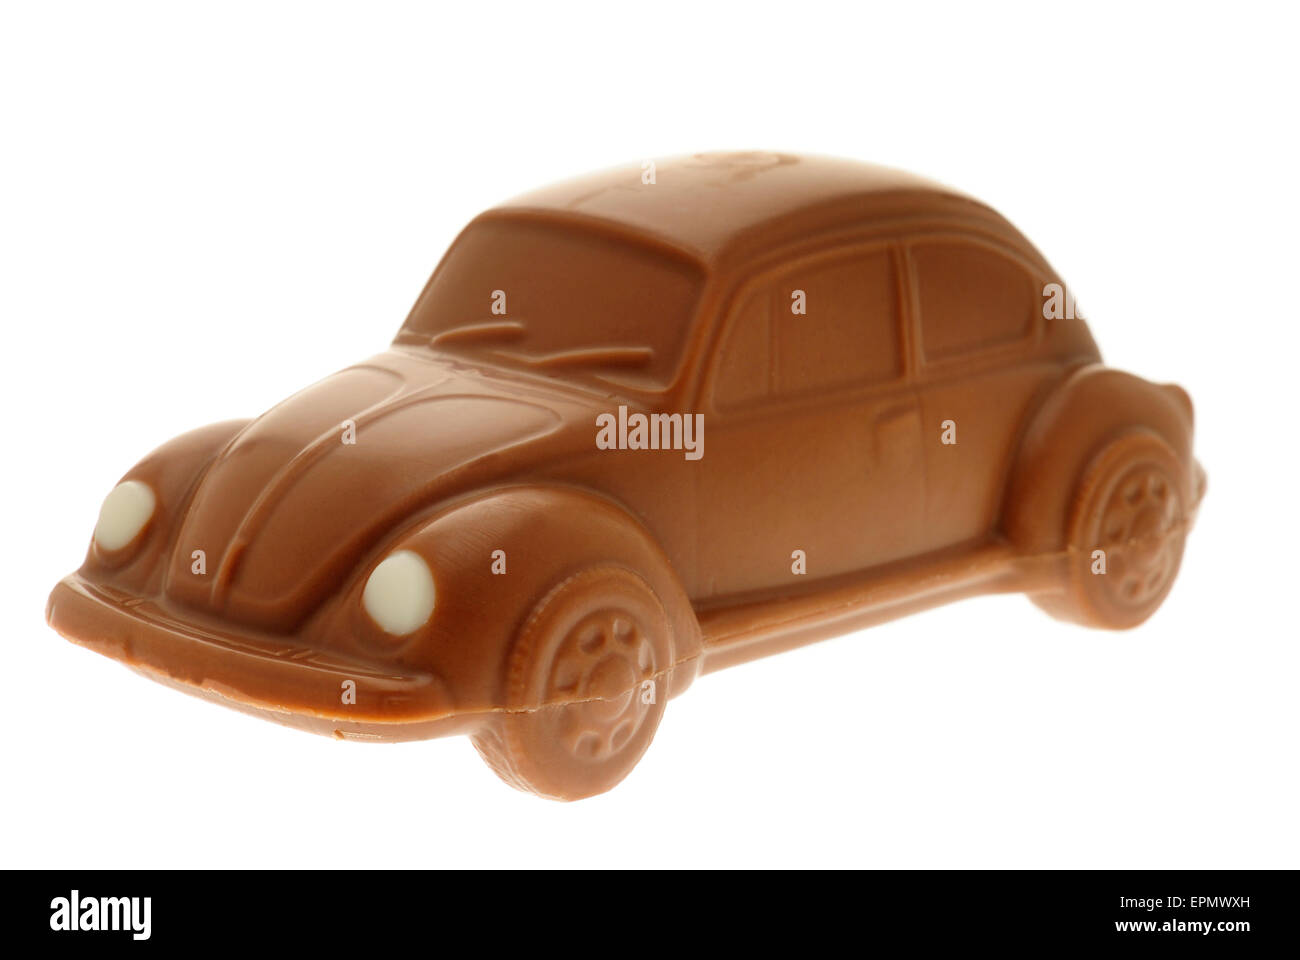 Chocolate Volkswagen Beetle Car Stock Photo